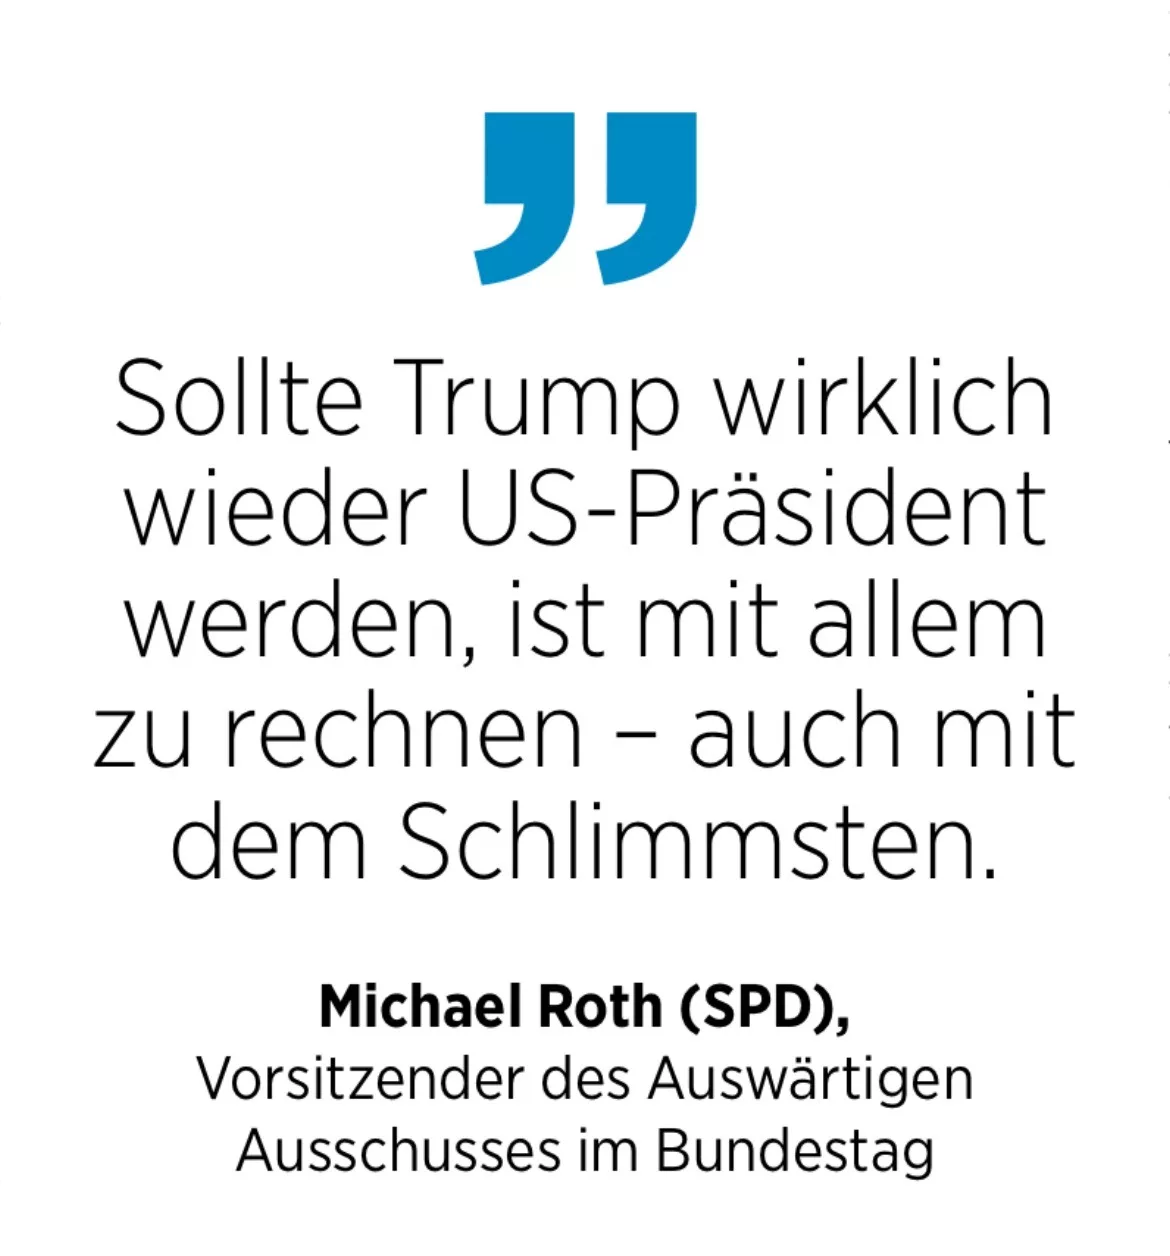 Michael Roth (SPD), Vorsitzender des Auswärtigen Ausschusses im Bundestag: Sollte Trump wirklich wieder US-Präsident werden, ist mit allem zu rechnen - auch mit dem Schlimmsten.